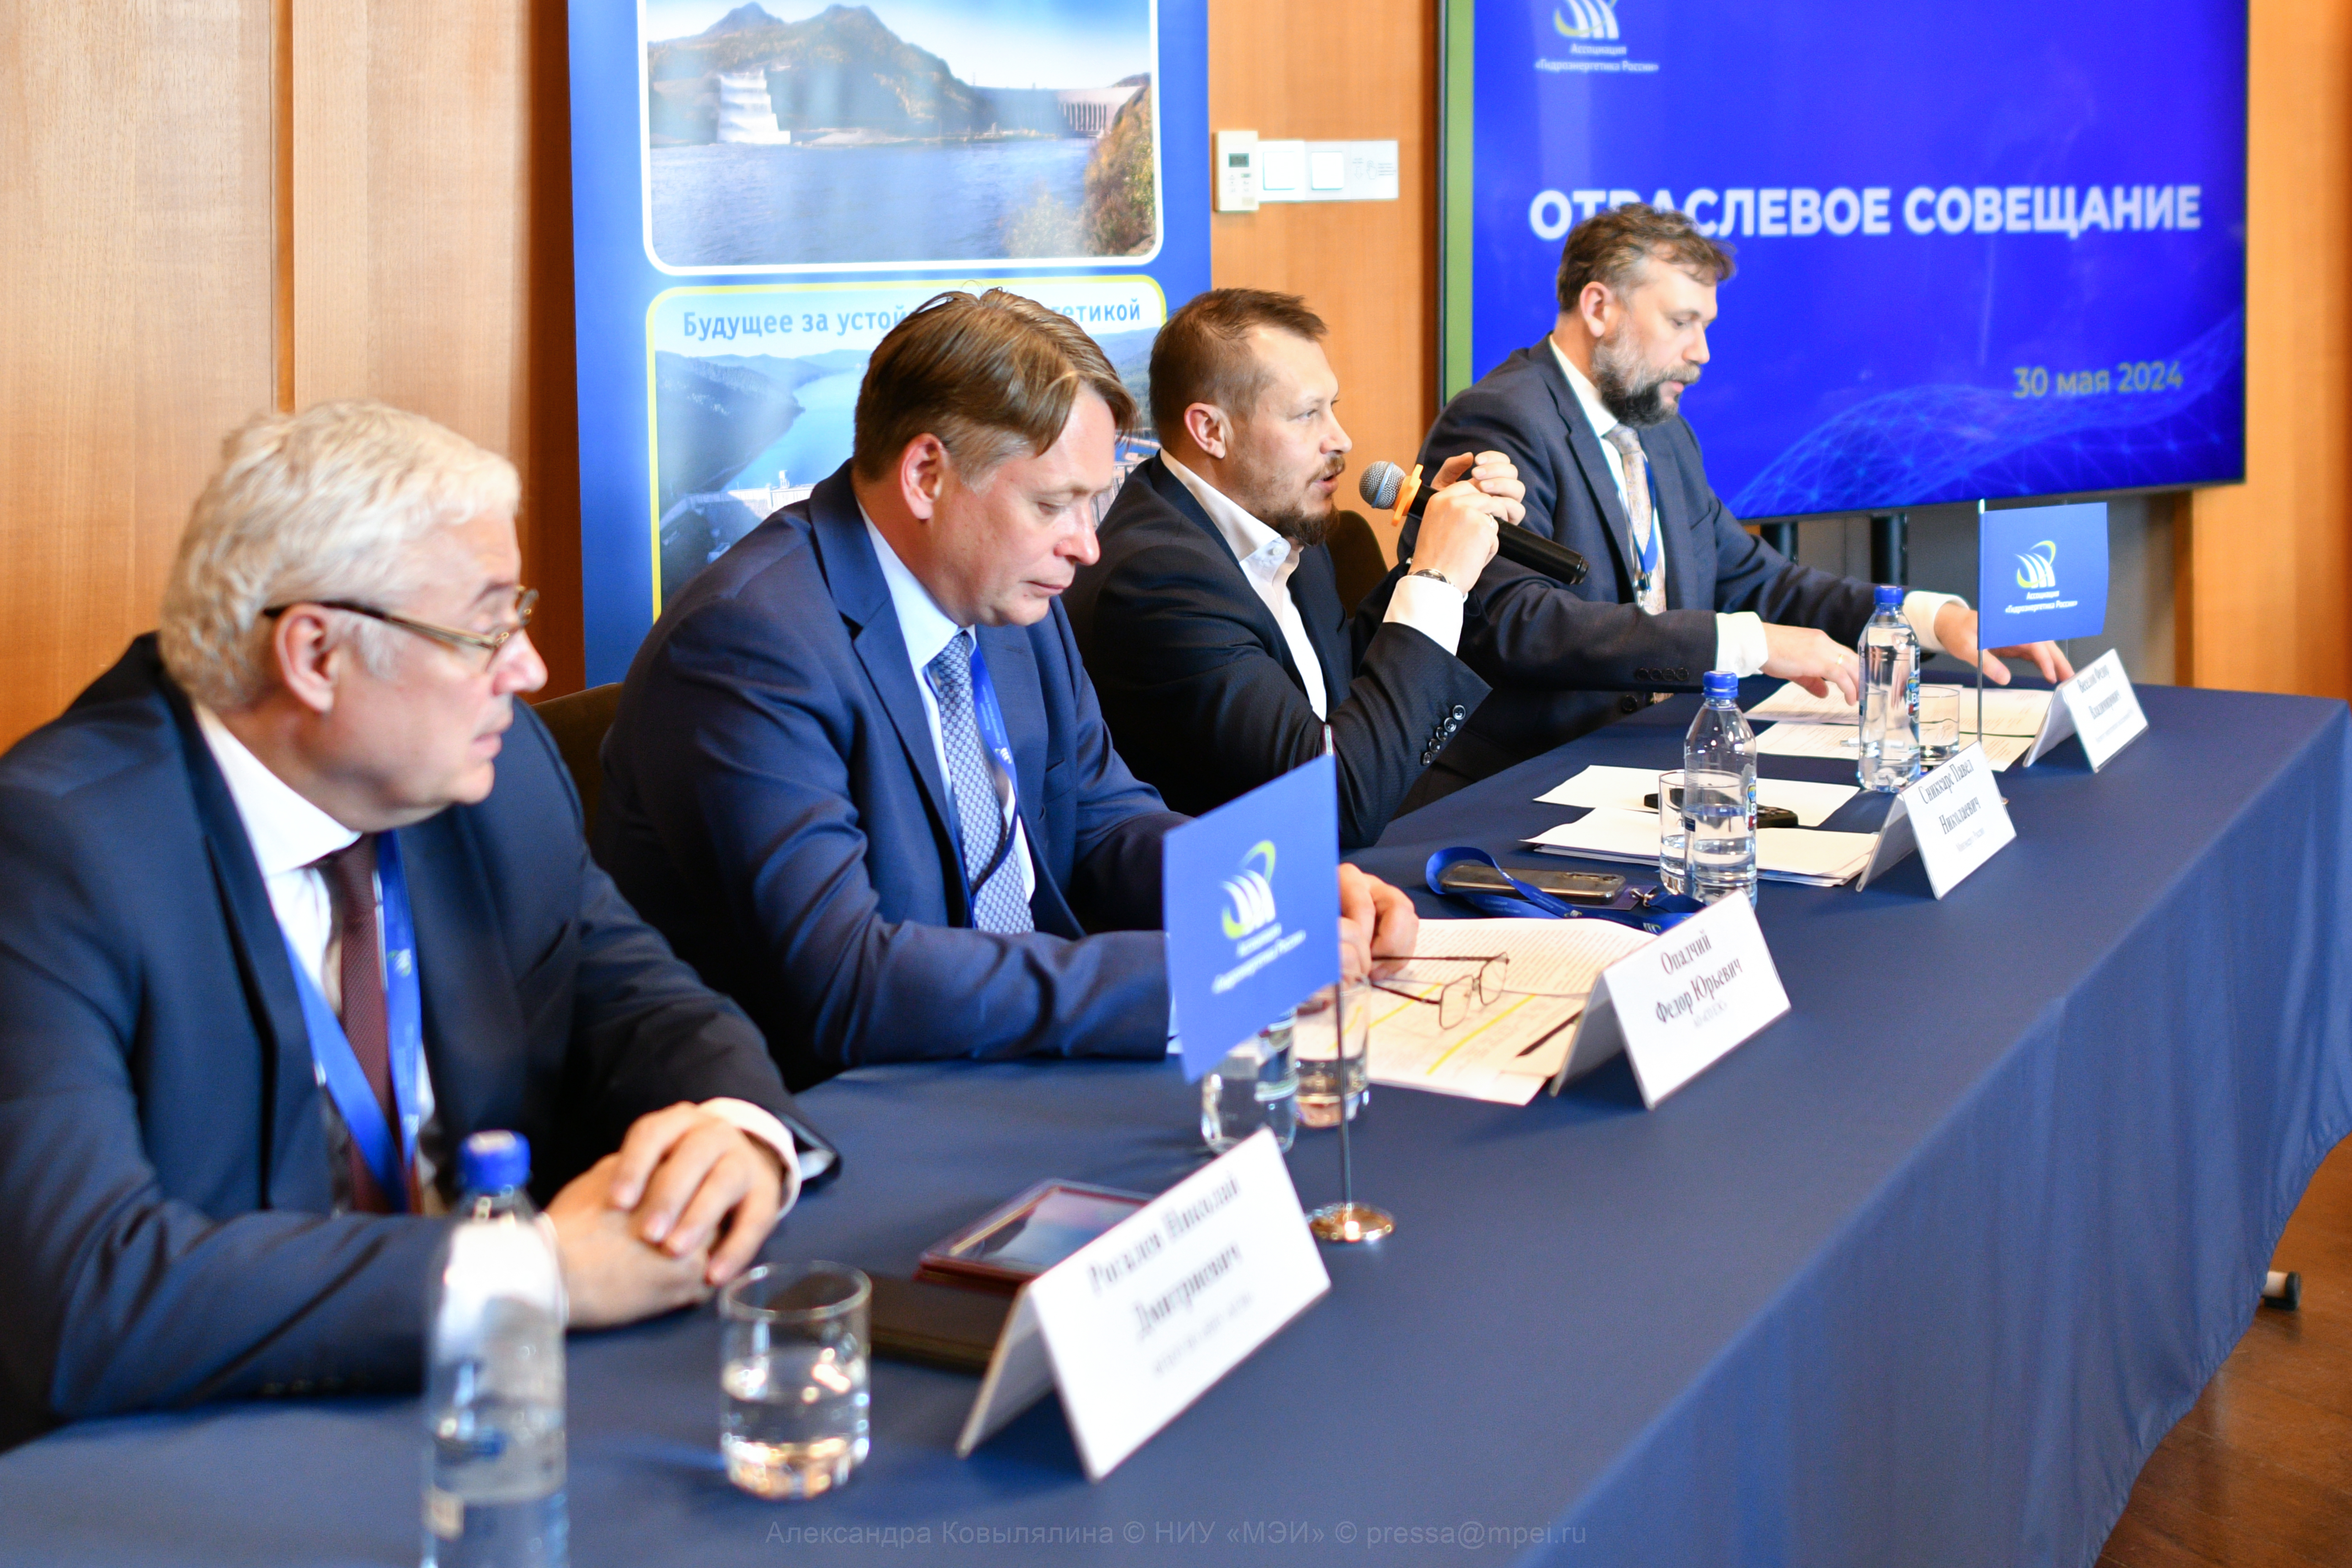 30 мая 2024 г. Ассоциация «Гидроэнергетика России» провела отраслевое совещание по вопросам развития гидроэнергетики и смежных отраслей промышленности